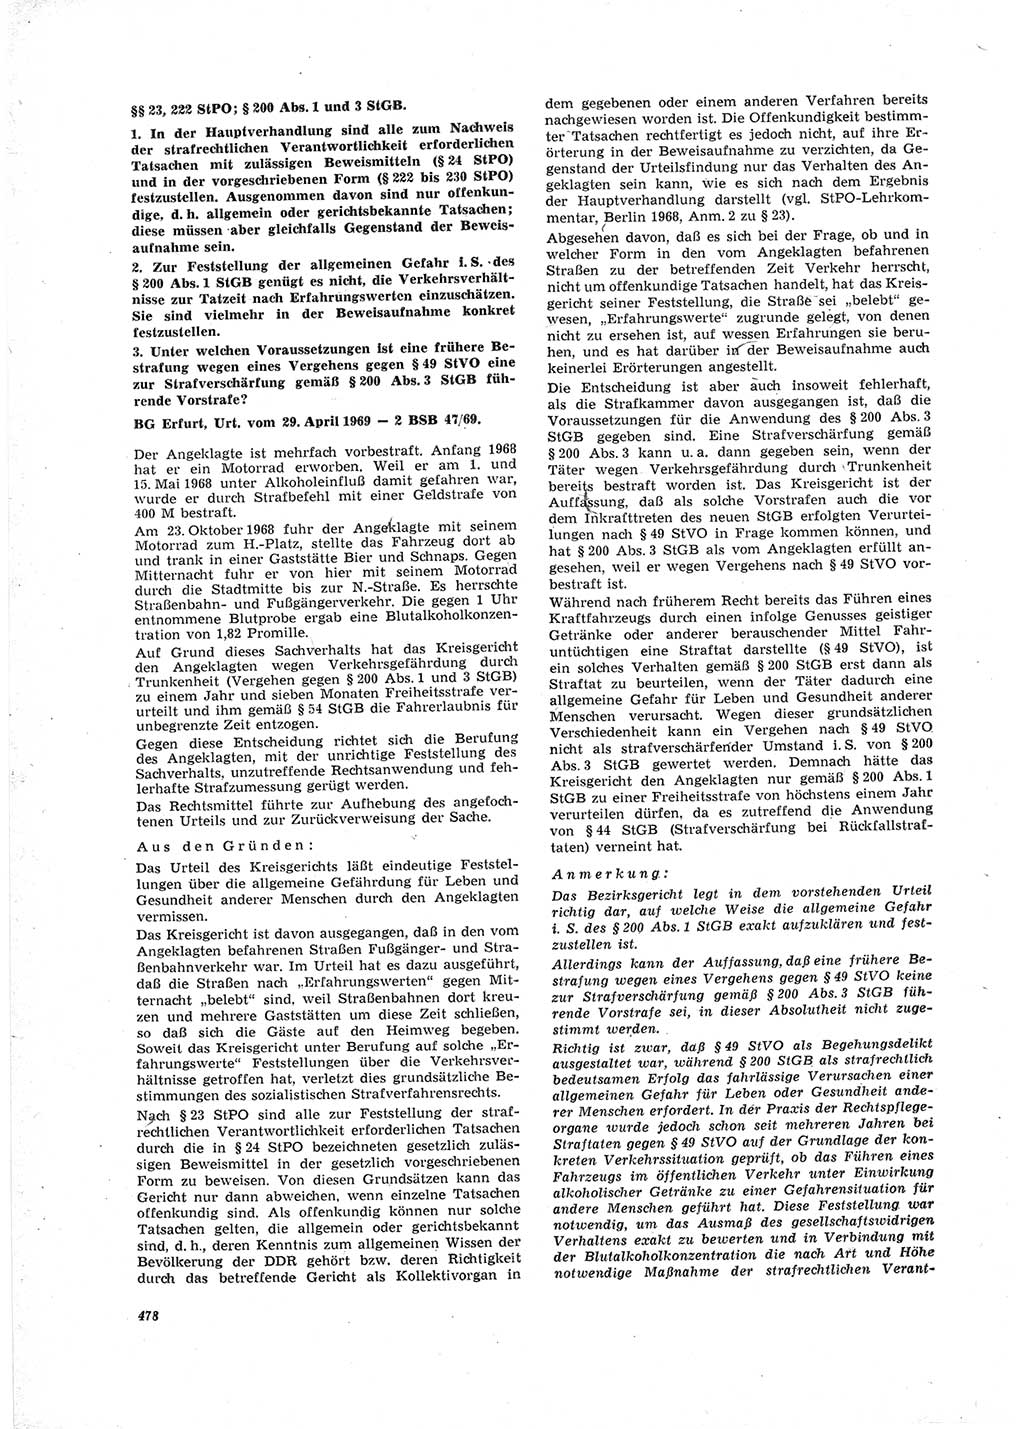 Neue Justiz (NJ), Zeitschrift für Recht und Rechtswissenschaft [Deutsche Demokratische Republik (DDR)], 23. Jahrgang 1969, Seite 478 (NJ DDR 1969, S. 478)